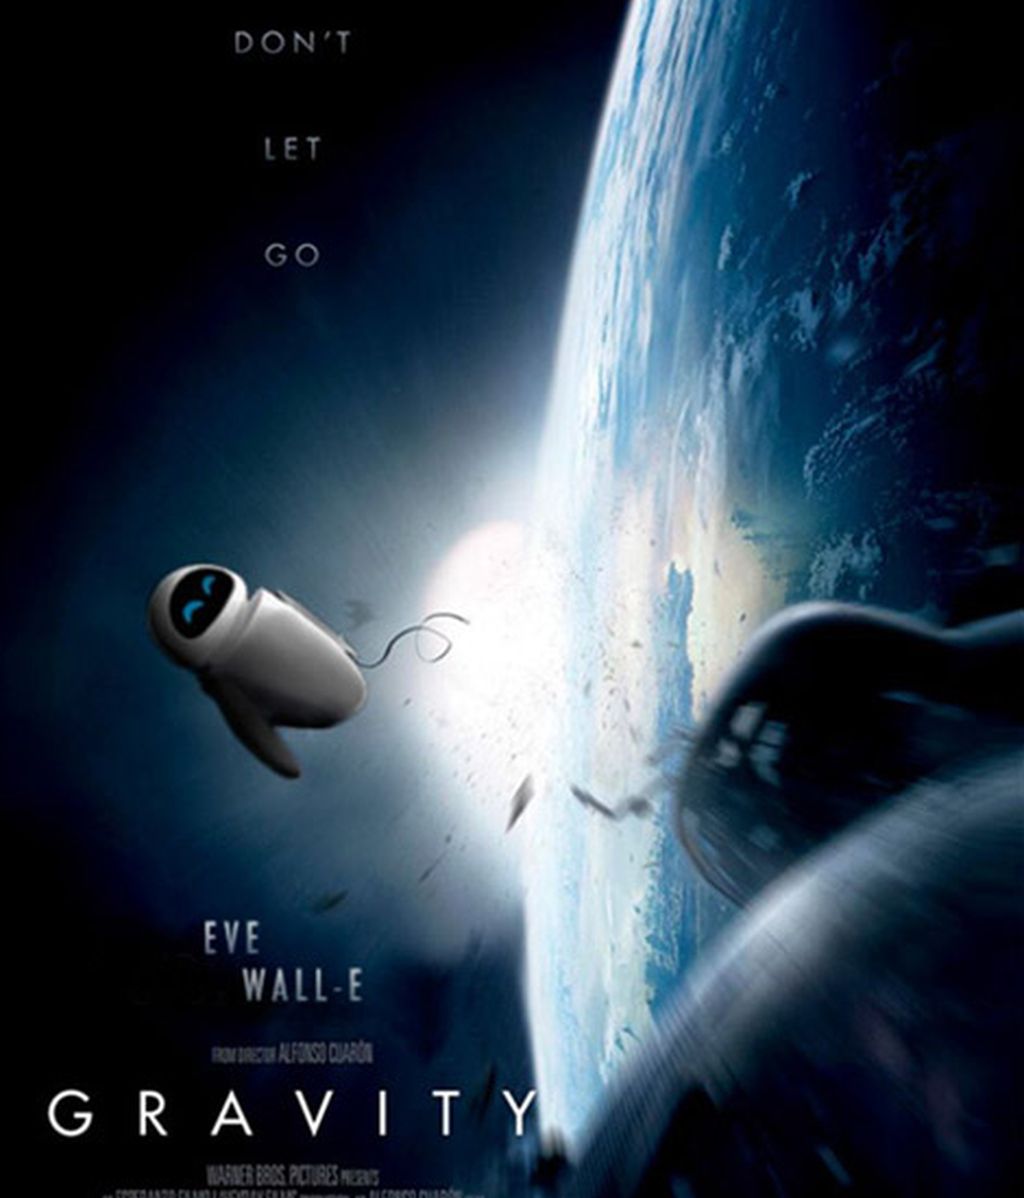 Oscars 2014: Nominadas versión Pixar